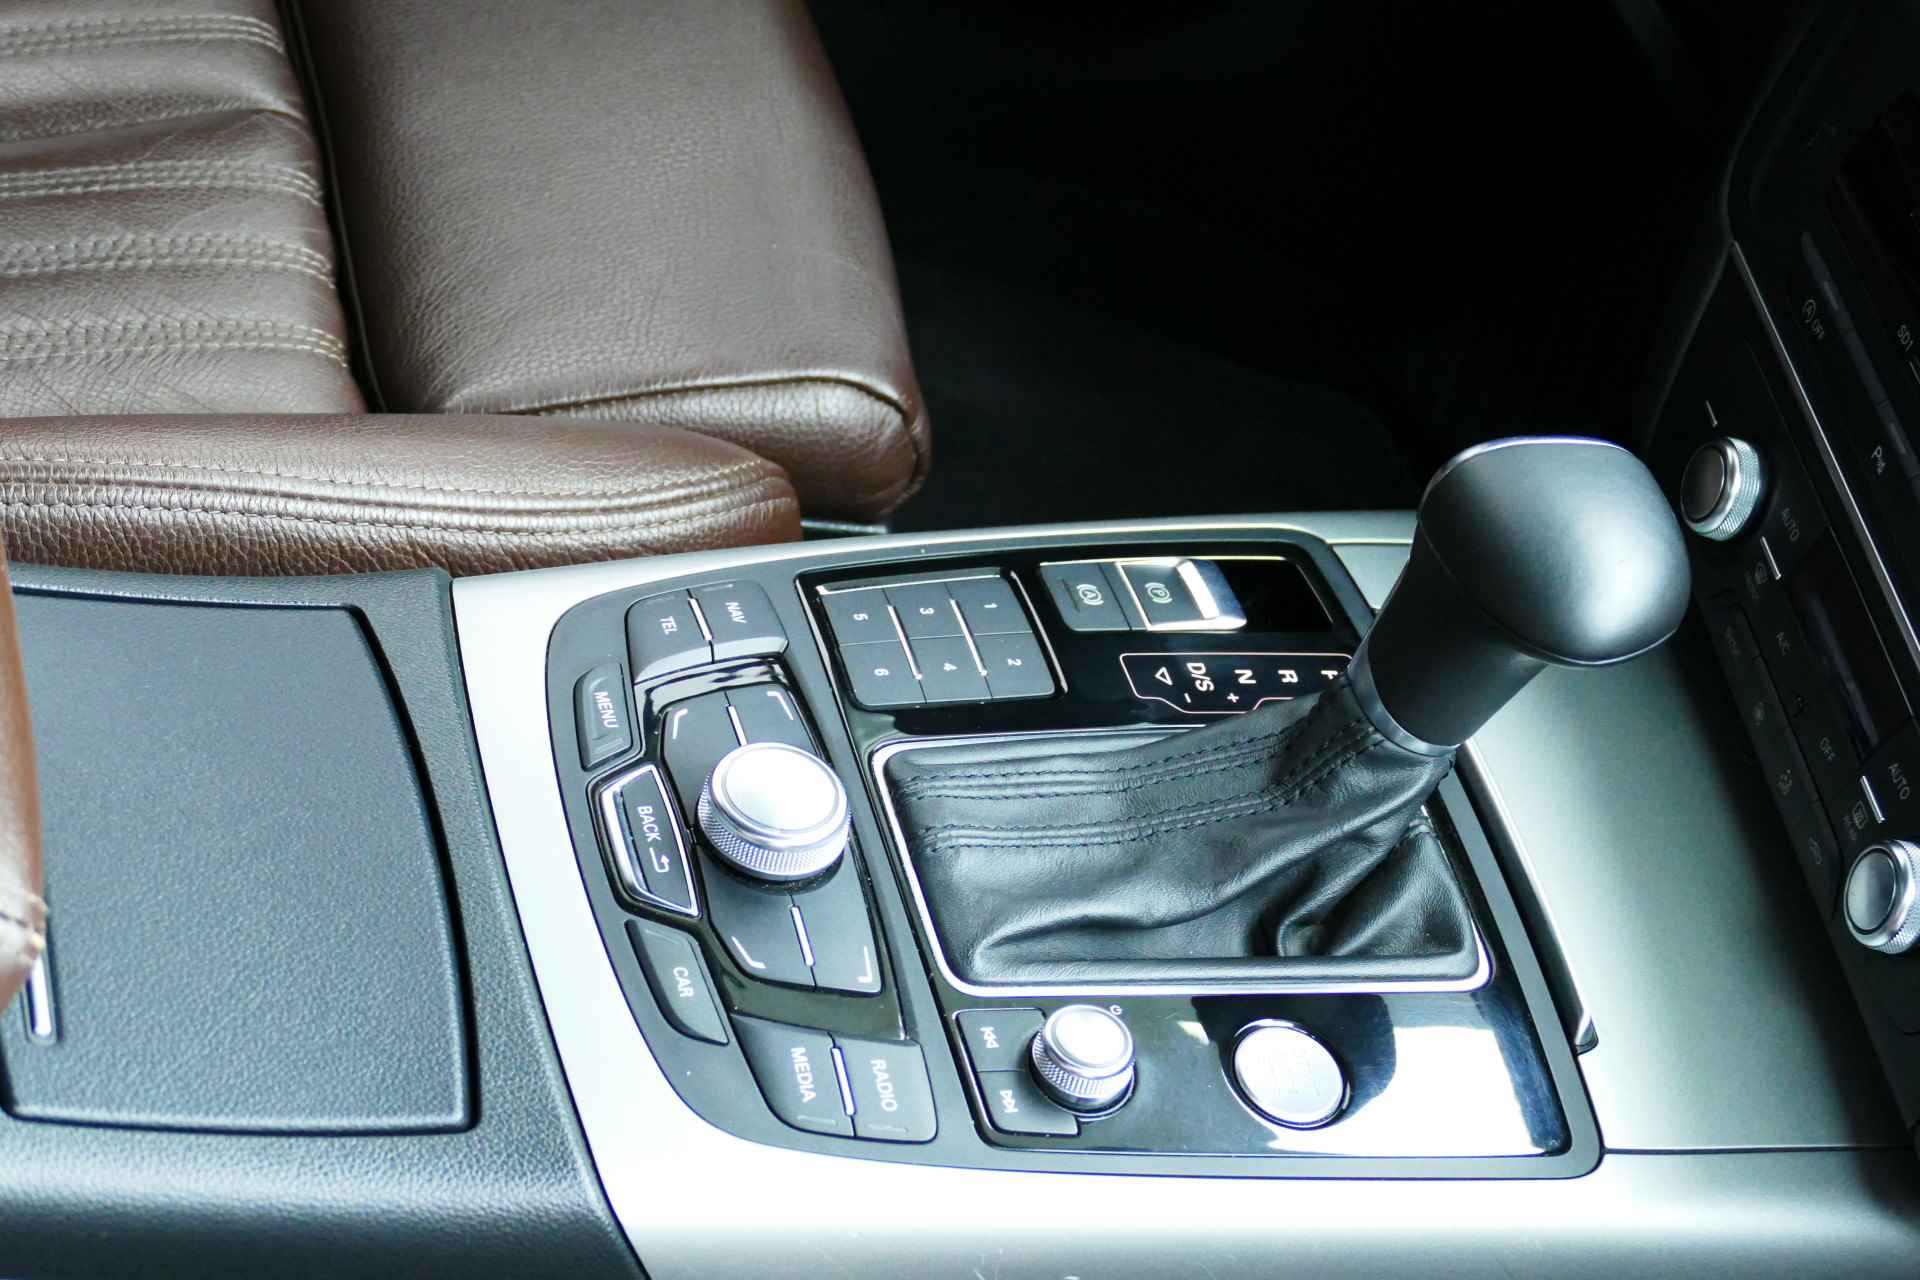 Audi A6 Avant 2.0 TFSI Business Edition CDN Motor. Leer, Navi, Clima, Cruise, PDC V+A, 17"LM Velgen - 4/35